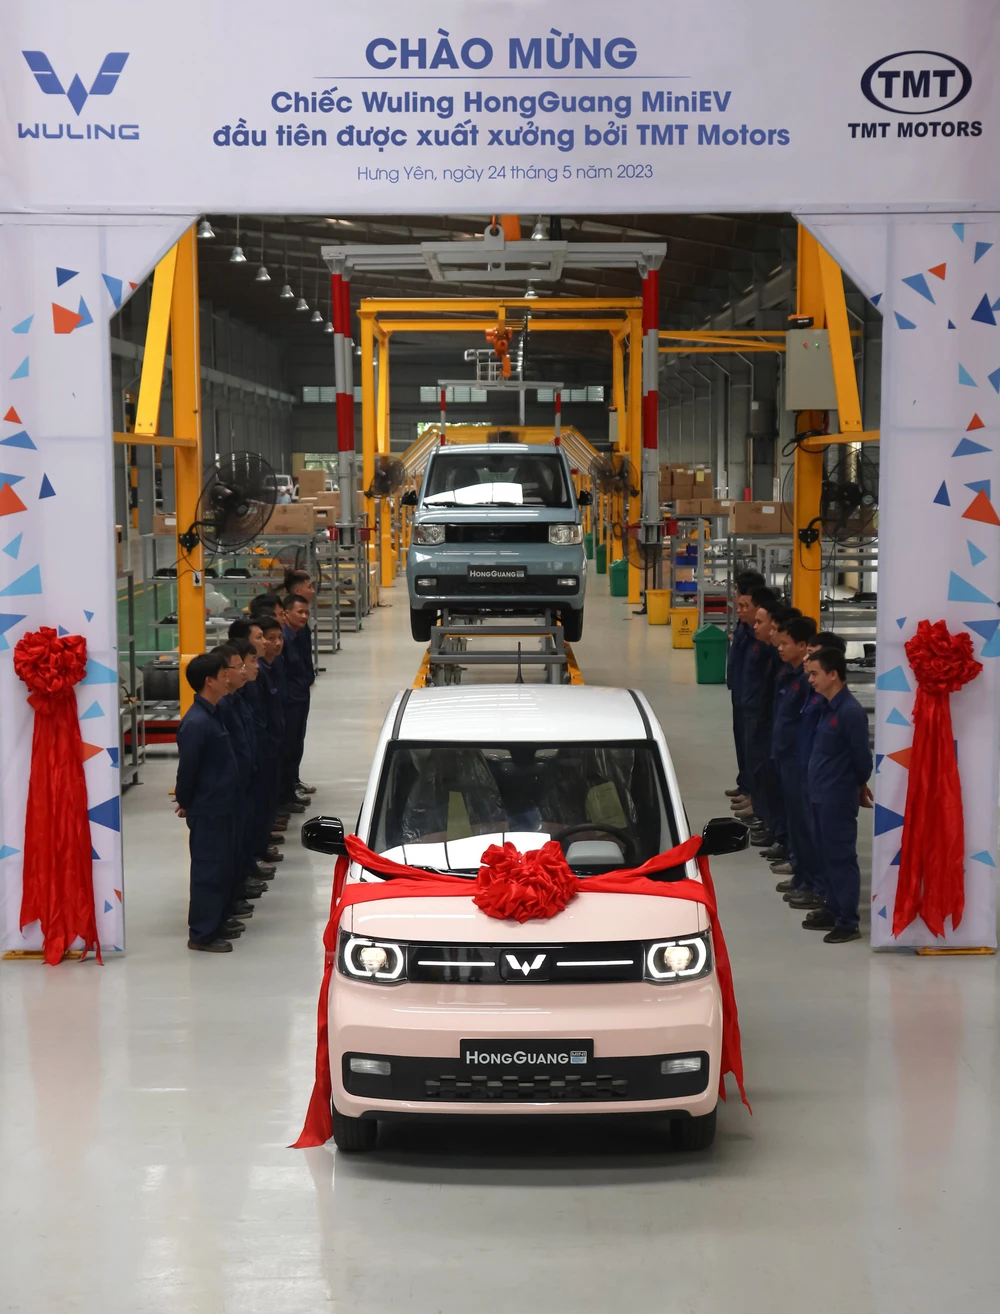 Loạt xe Trung Quốc sắp đổ bộ vào Việt Nam, có mẫu rẻ nhất thị trường ô tô - Ảnh 5.